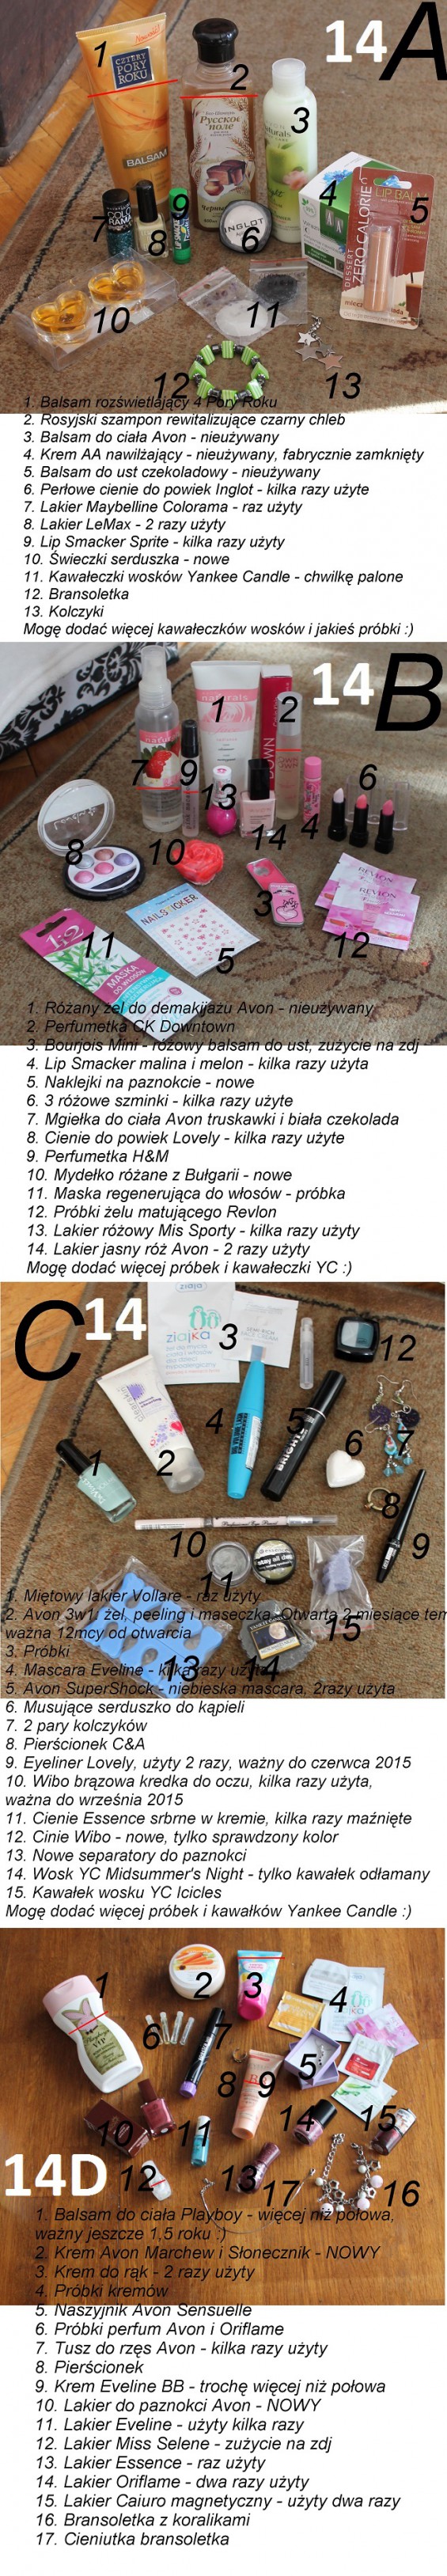 Wymiana kosmetyczna IV - EDYCJA JAJKOWA! (wyniki str. 10)